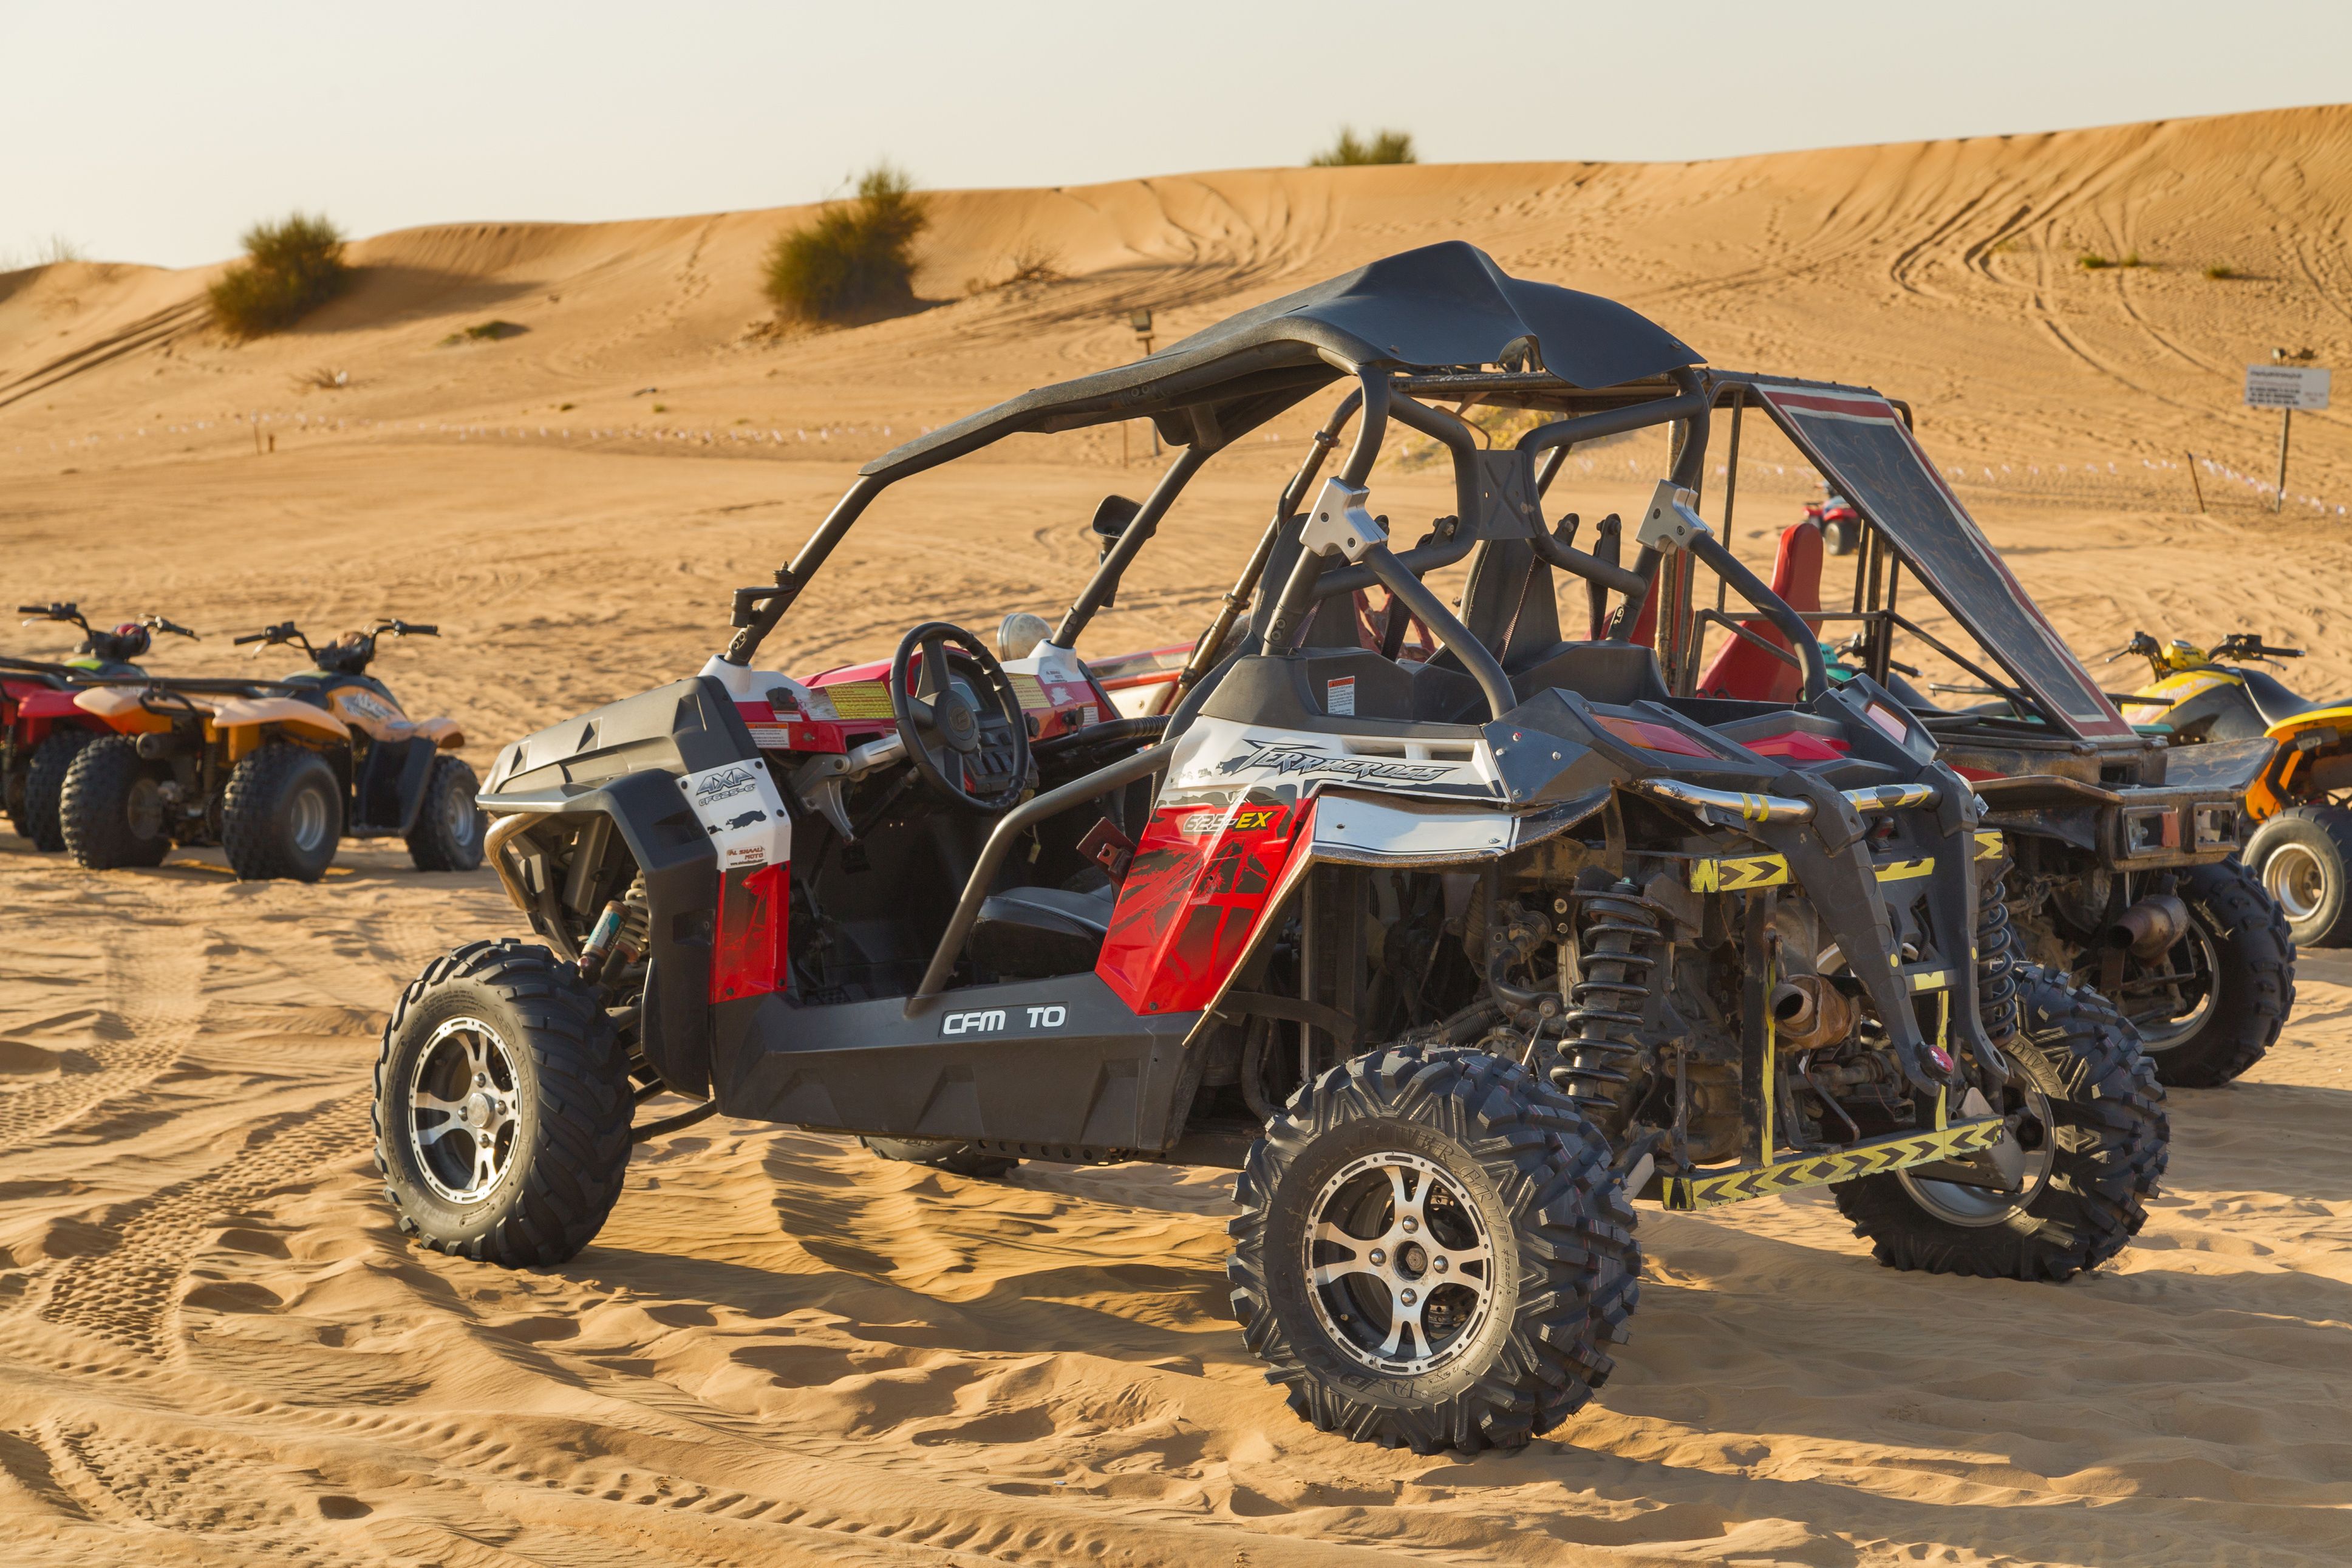 Dubai: sivatagi kisokos adrenalin függőknek - OTP Travel Utazási Iroda